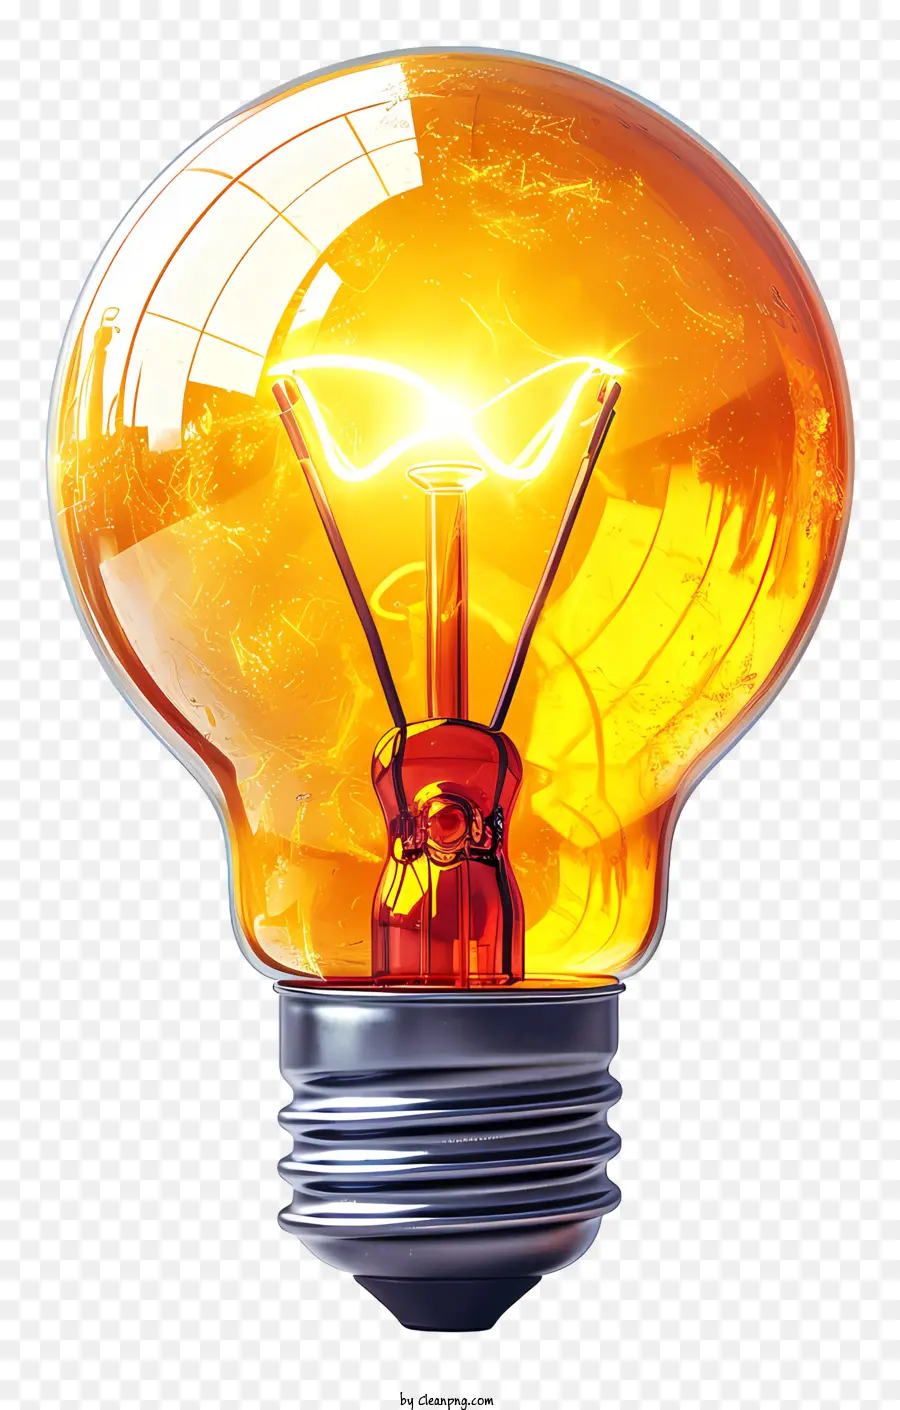 lampadina - Immagine realistica di lampadina luminosa e luminosa